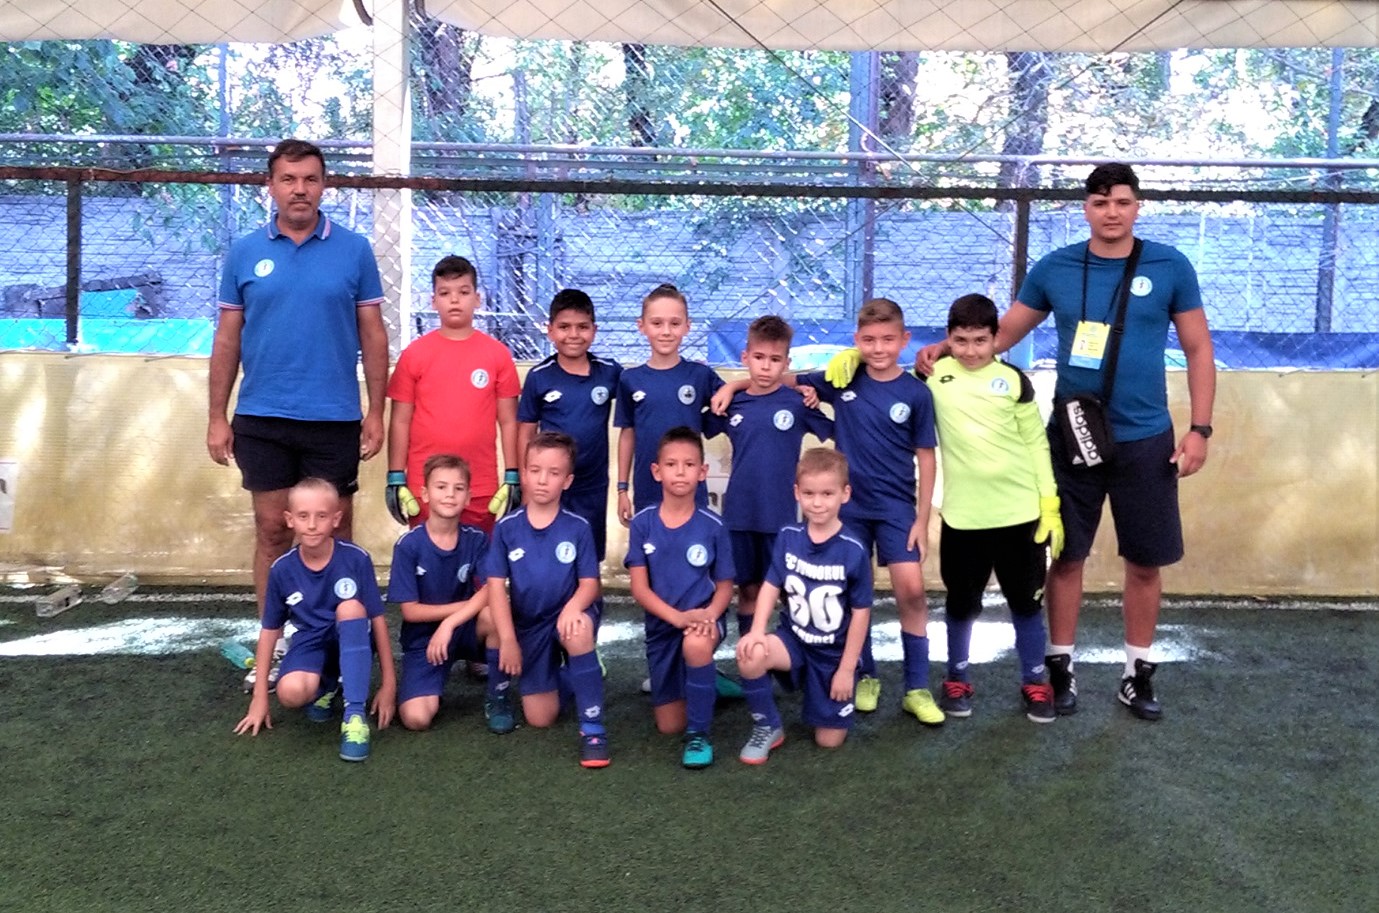 Juniori U9 AMFB – FC Juniorul s-a bucurat de fotbal, câștigând cu zâmbetul pe buze!